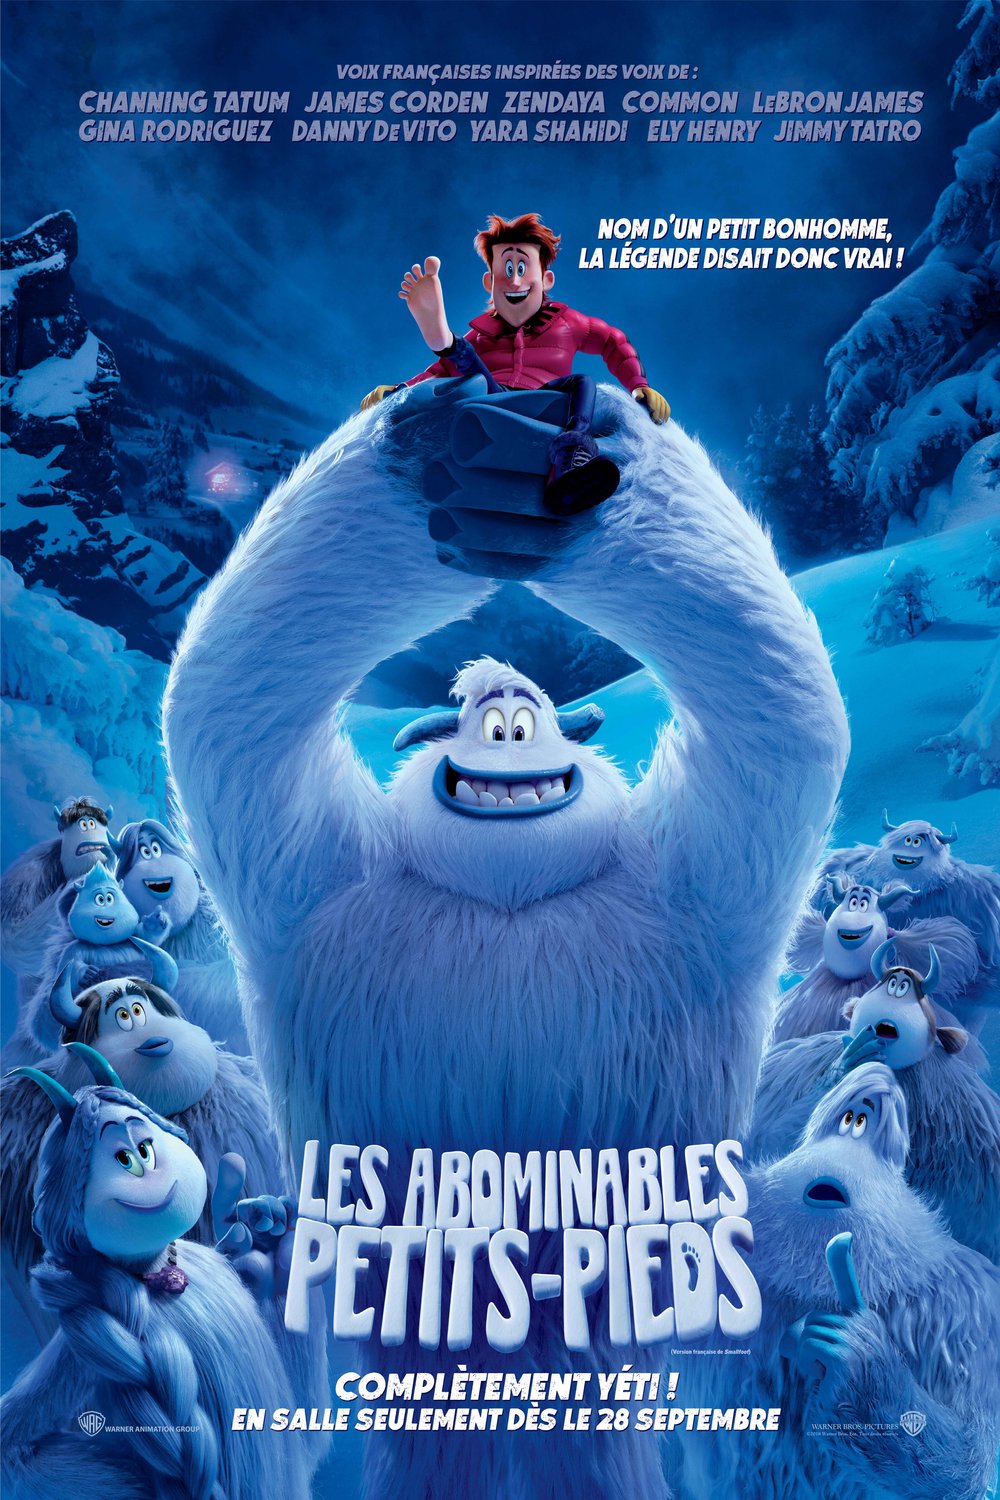 L'affiche du film Les Abominables Petits-Pieds